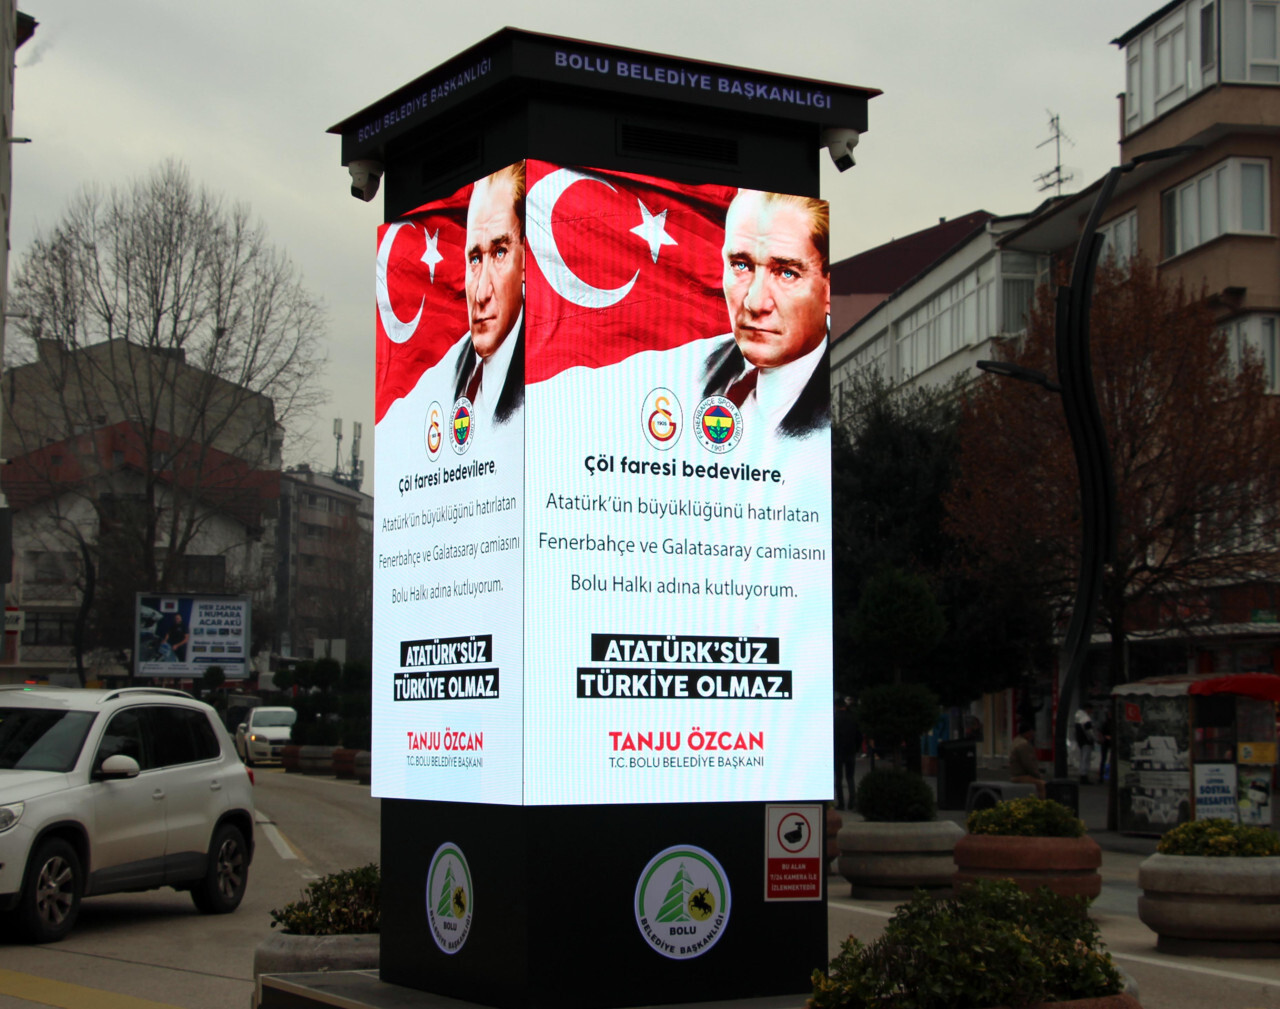 الصراع يحتدم بين الدولتين .. تركيا تفتح تحقيق في لوحة إعلانية مسيئة للسعوديين